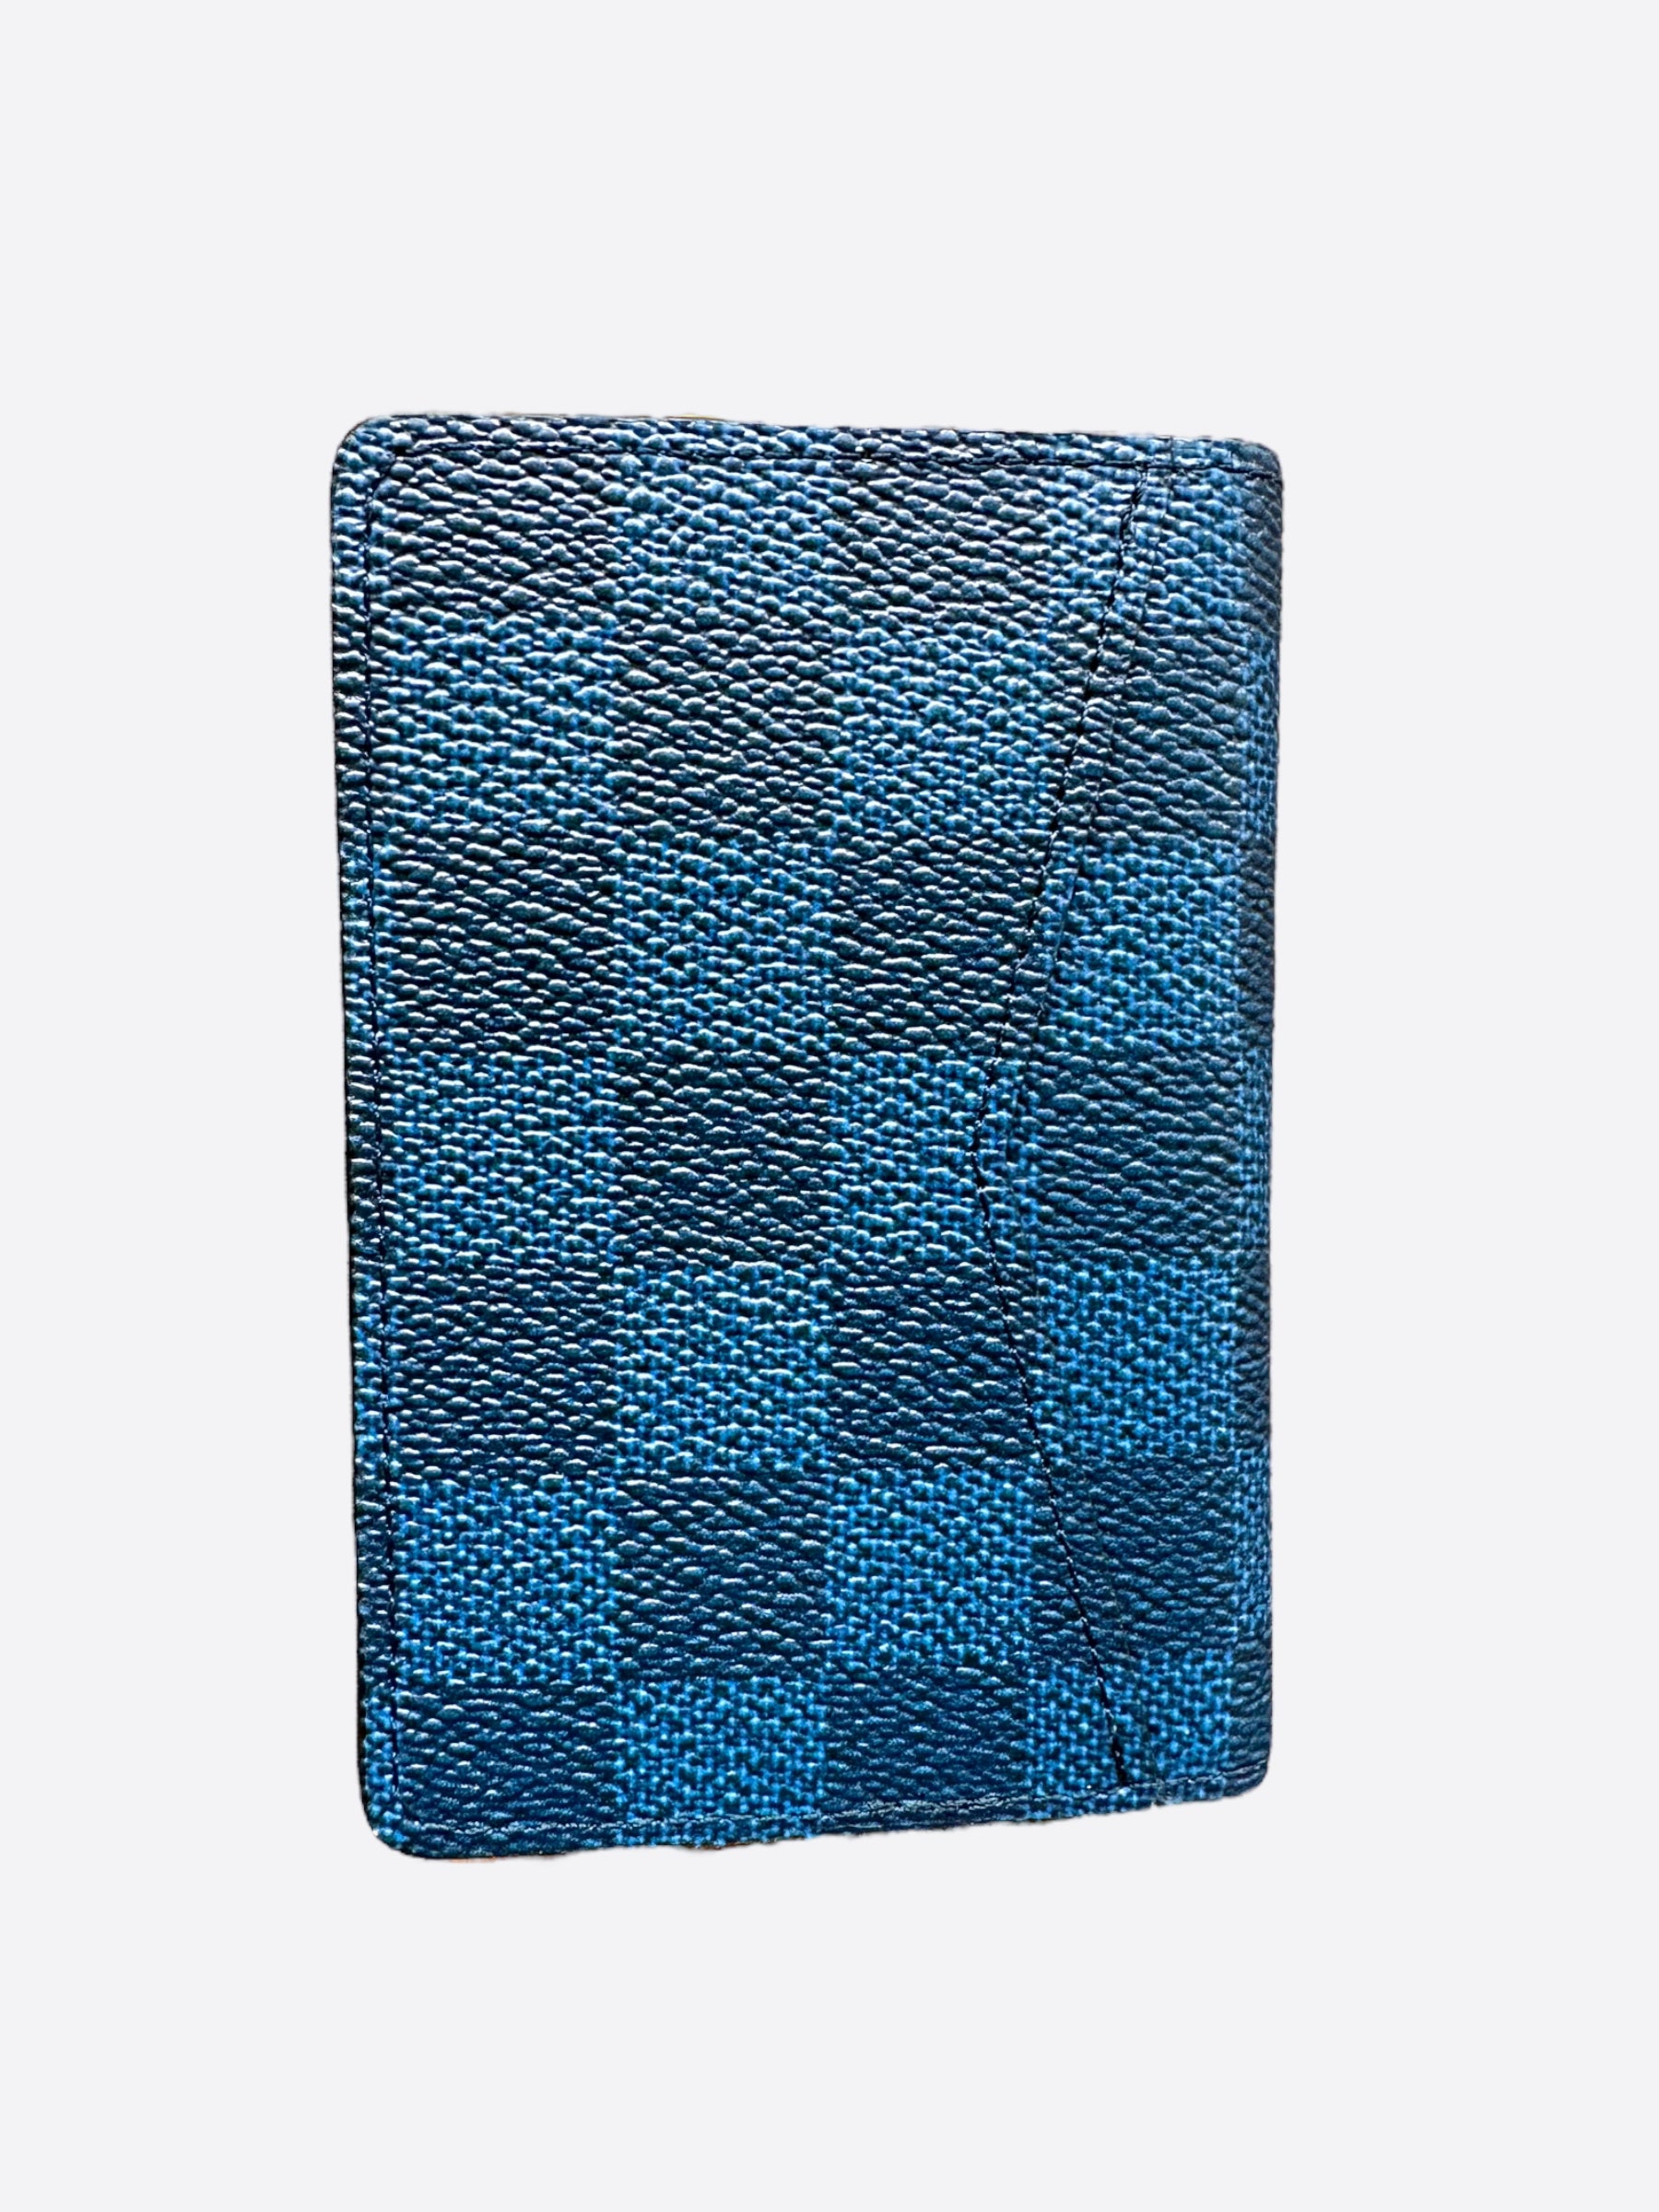 Louis Vuitton Pocket Organizer Damier Azur NM White/Blue in Canvas